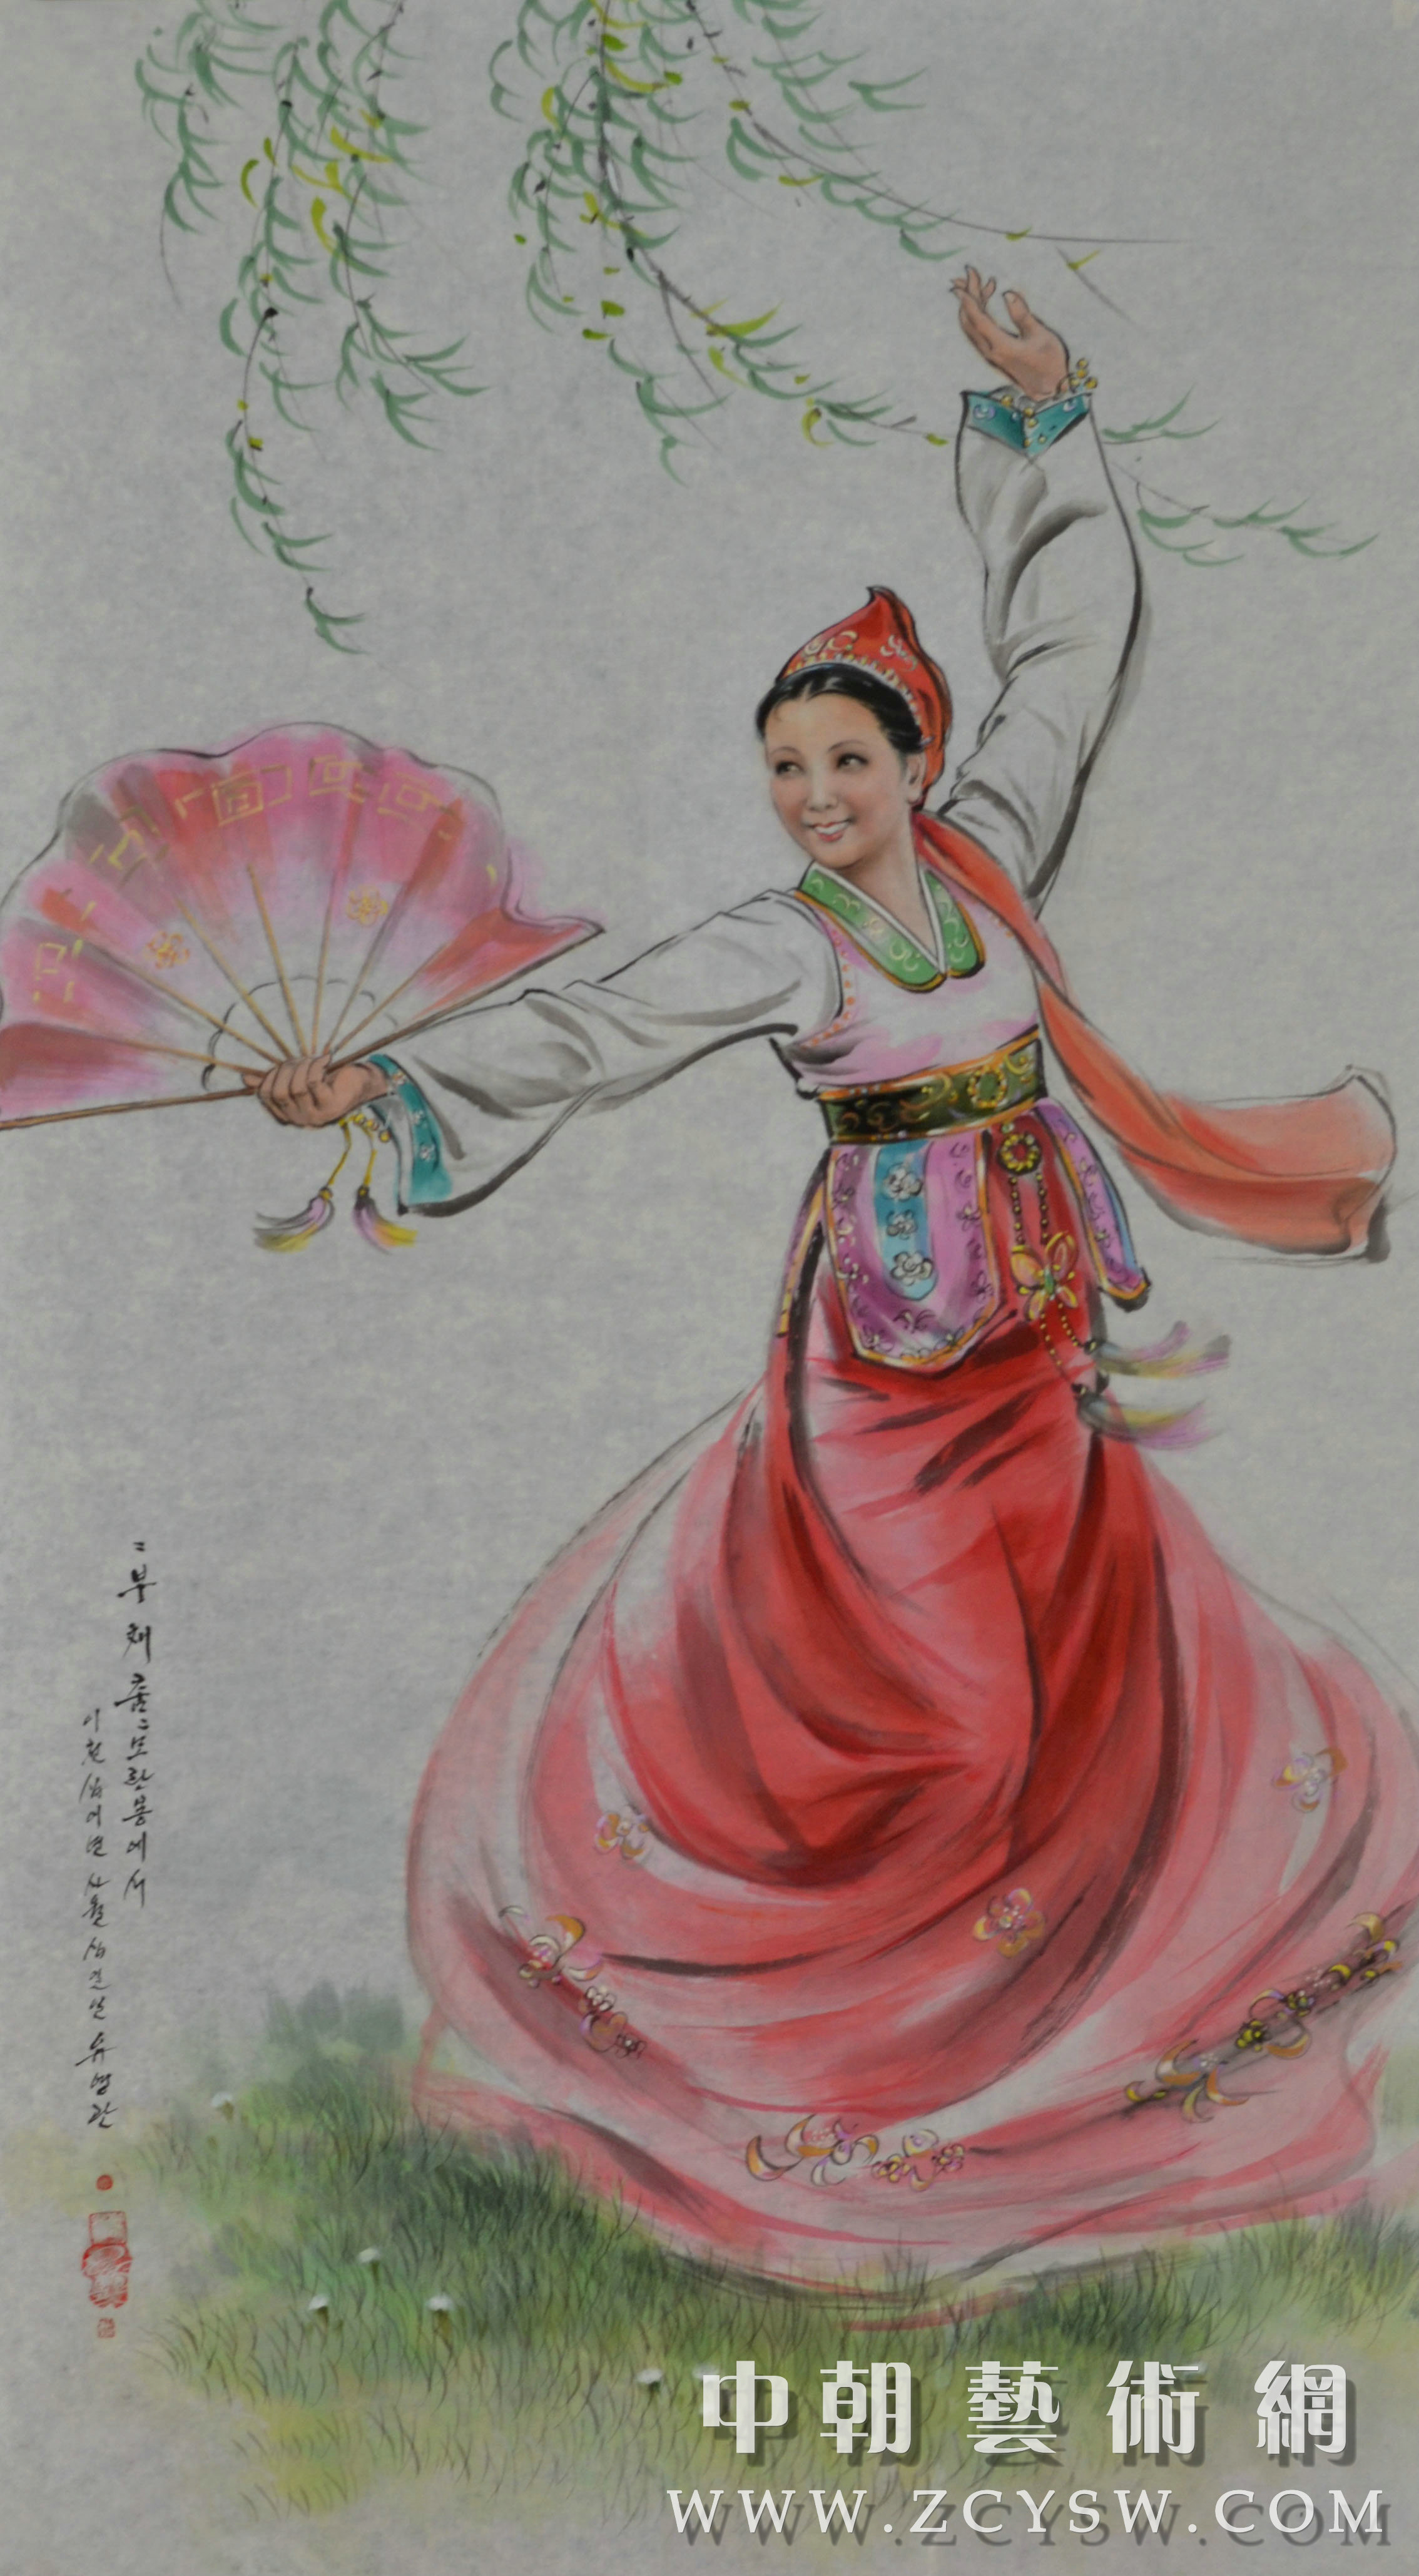 朝鲜画/朝鲜油画-在穆兰峰的扇子舞